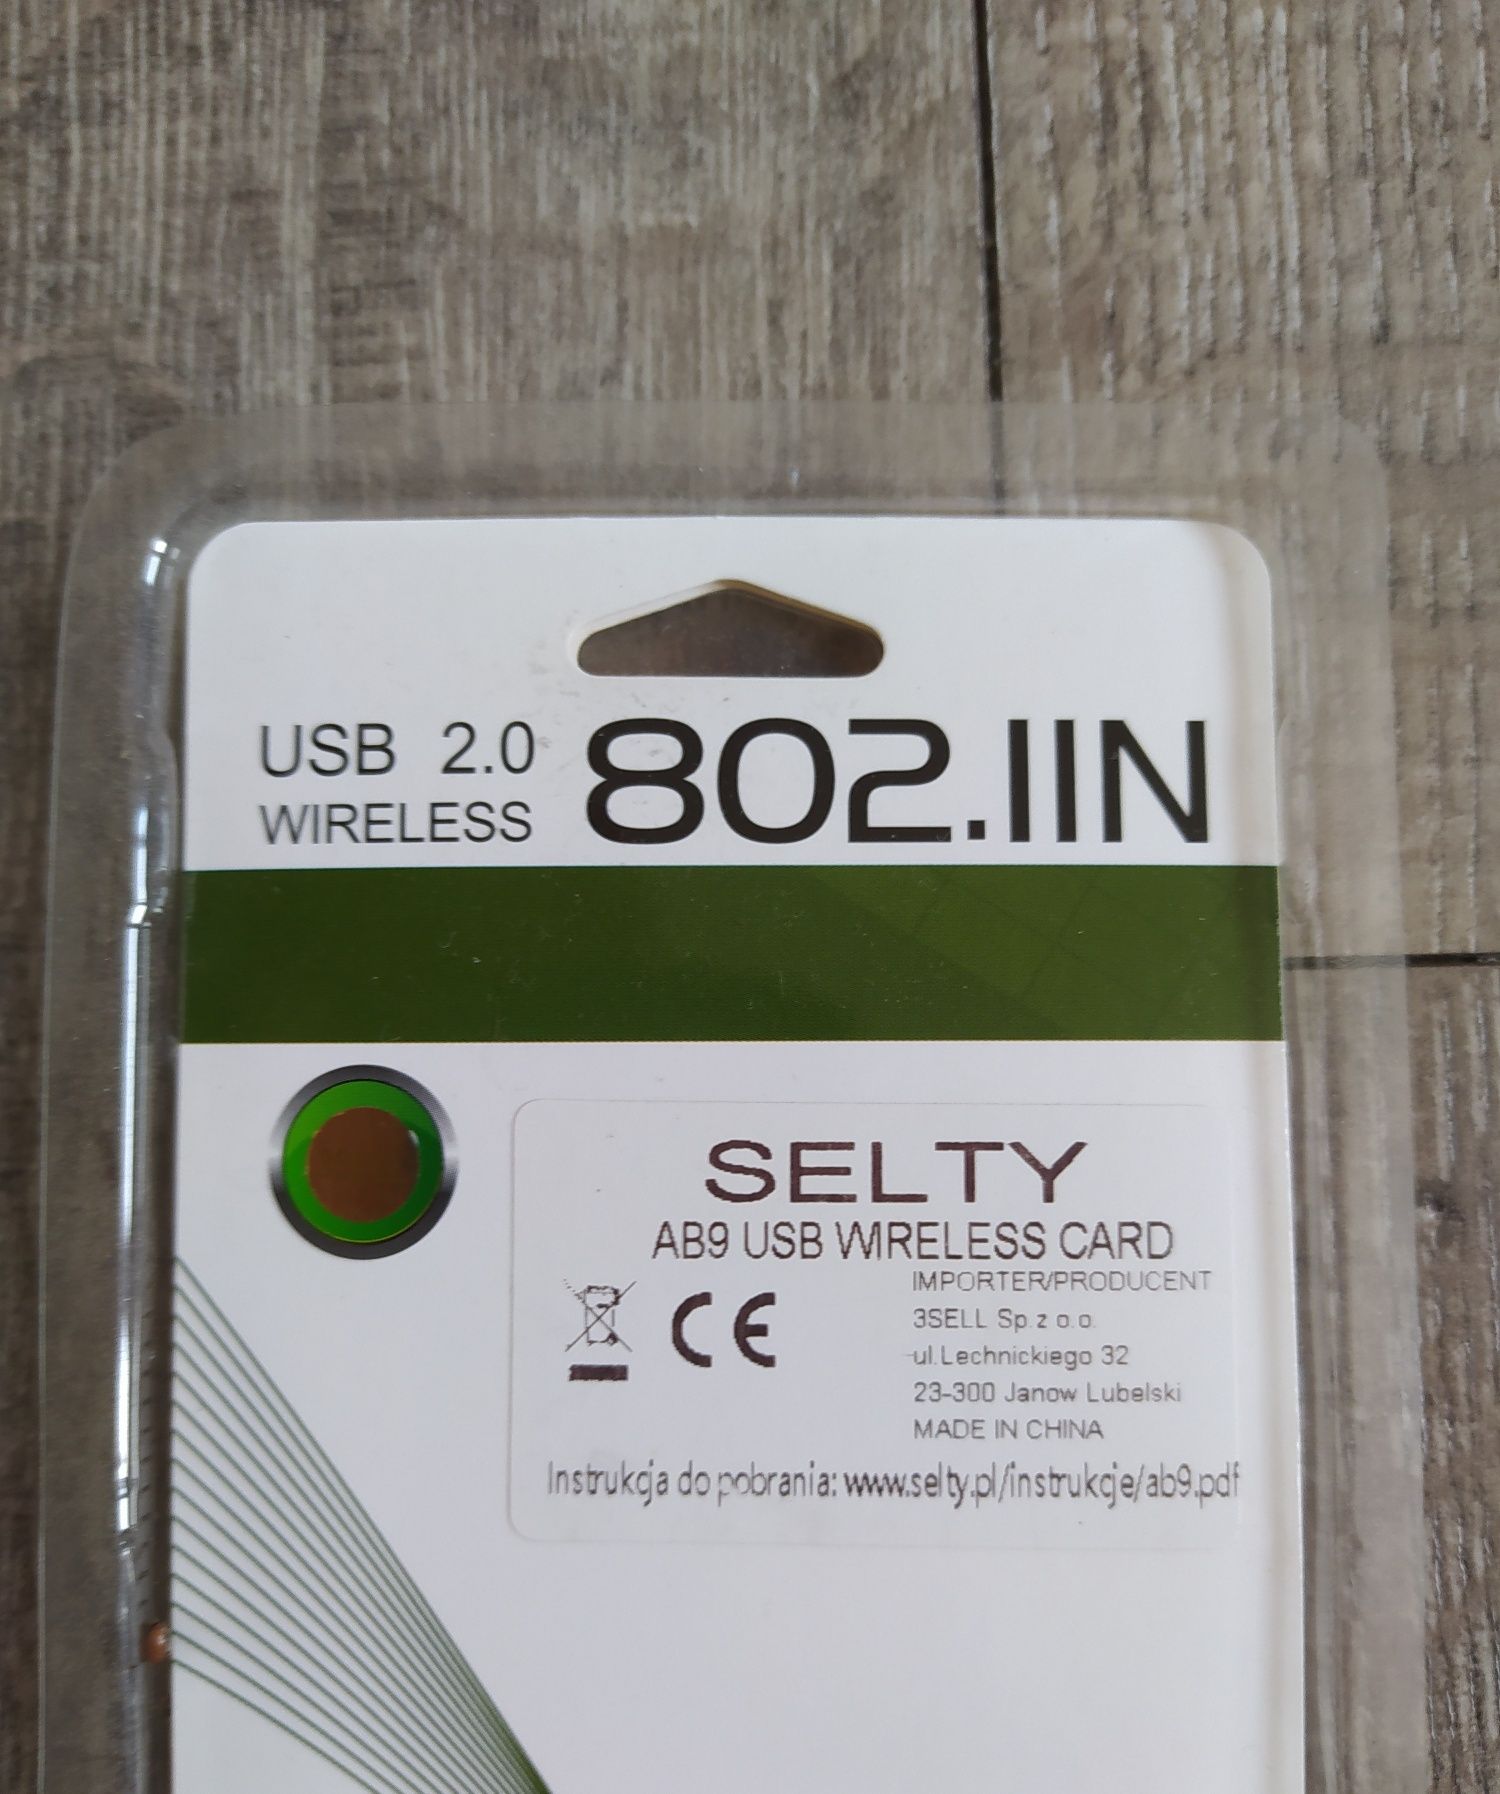 Płyta USB 2.0 Wireless 802.IIN Wysyłka